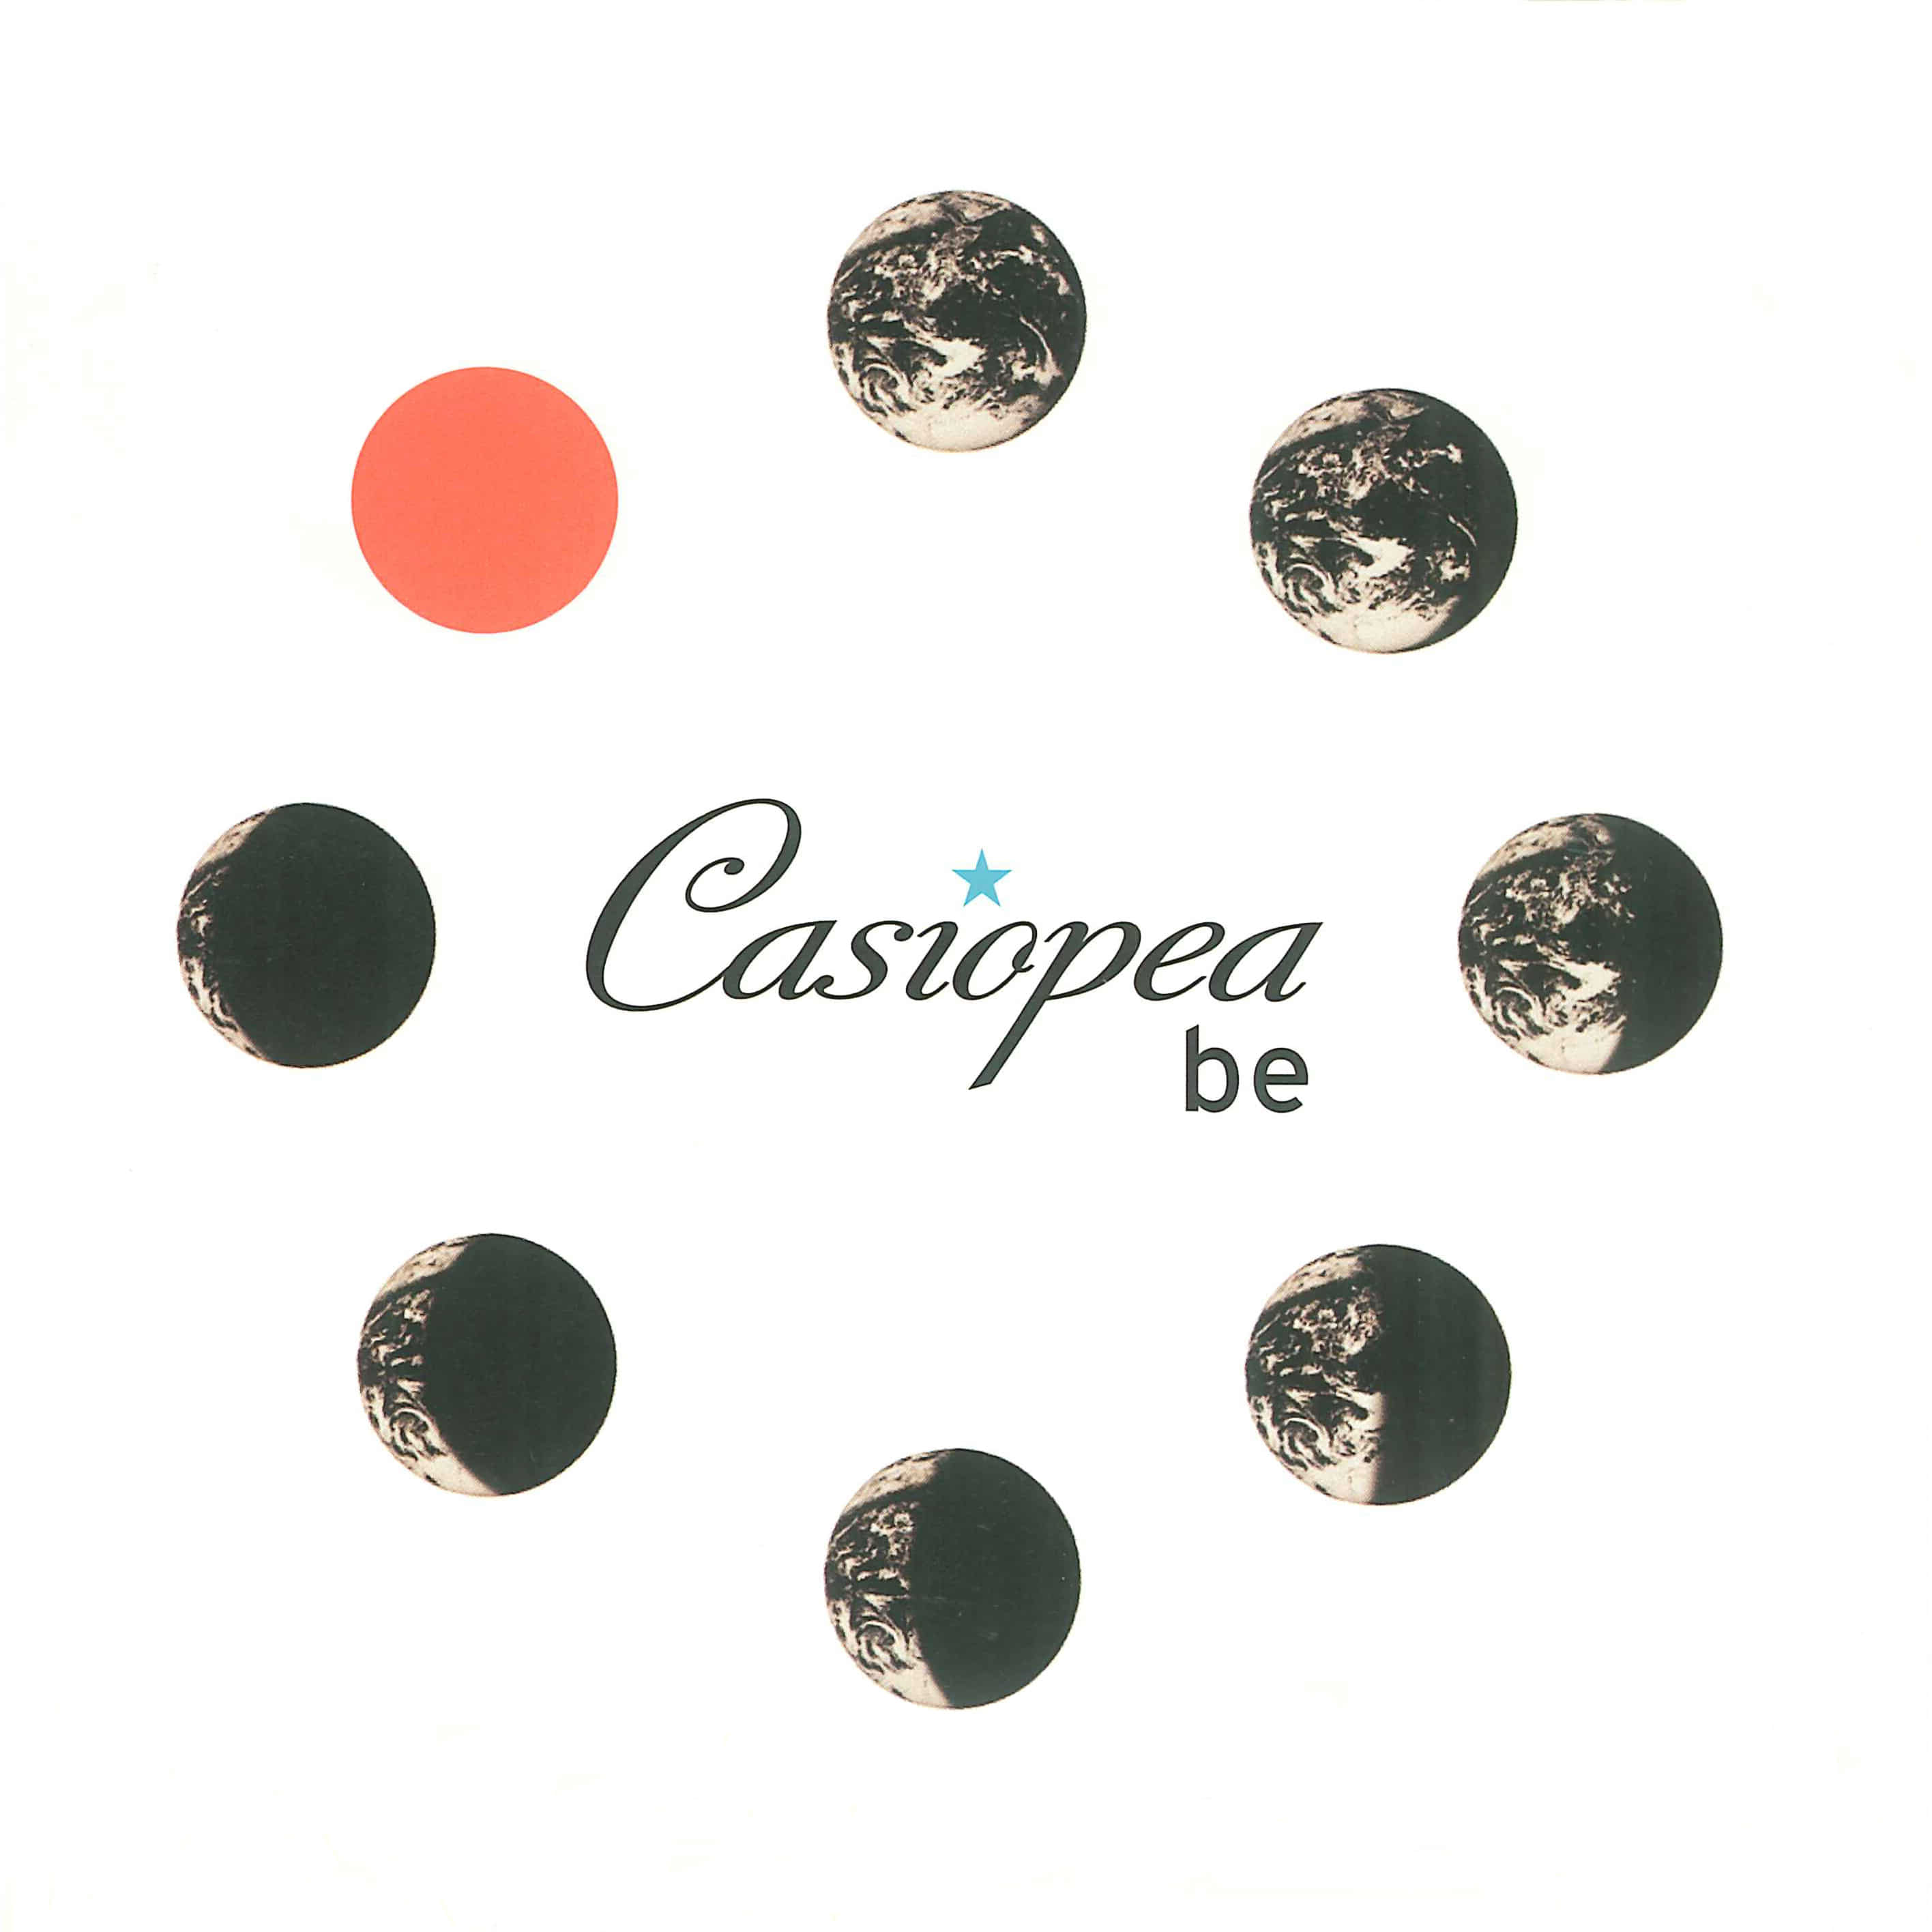 Casiopea-THE PURPLE BIRD